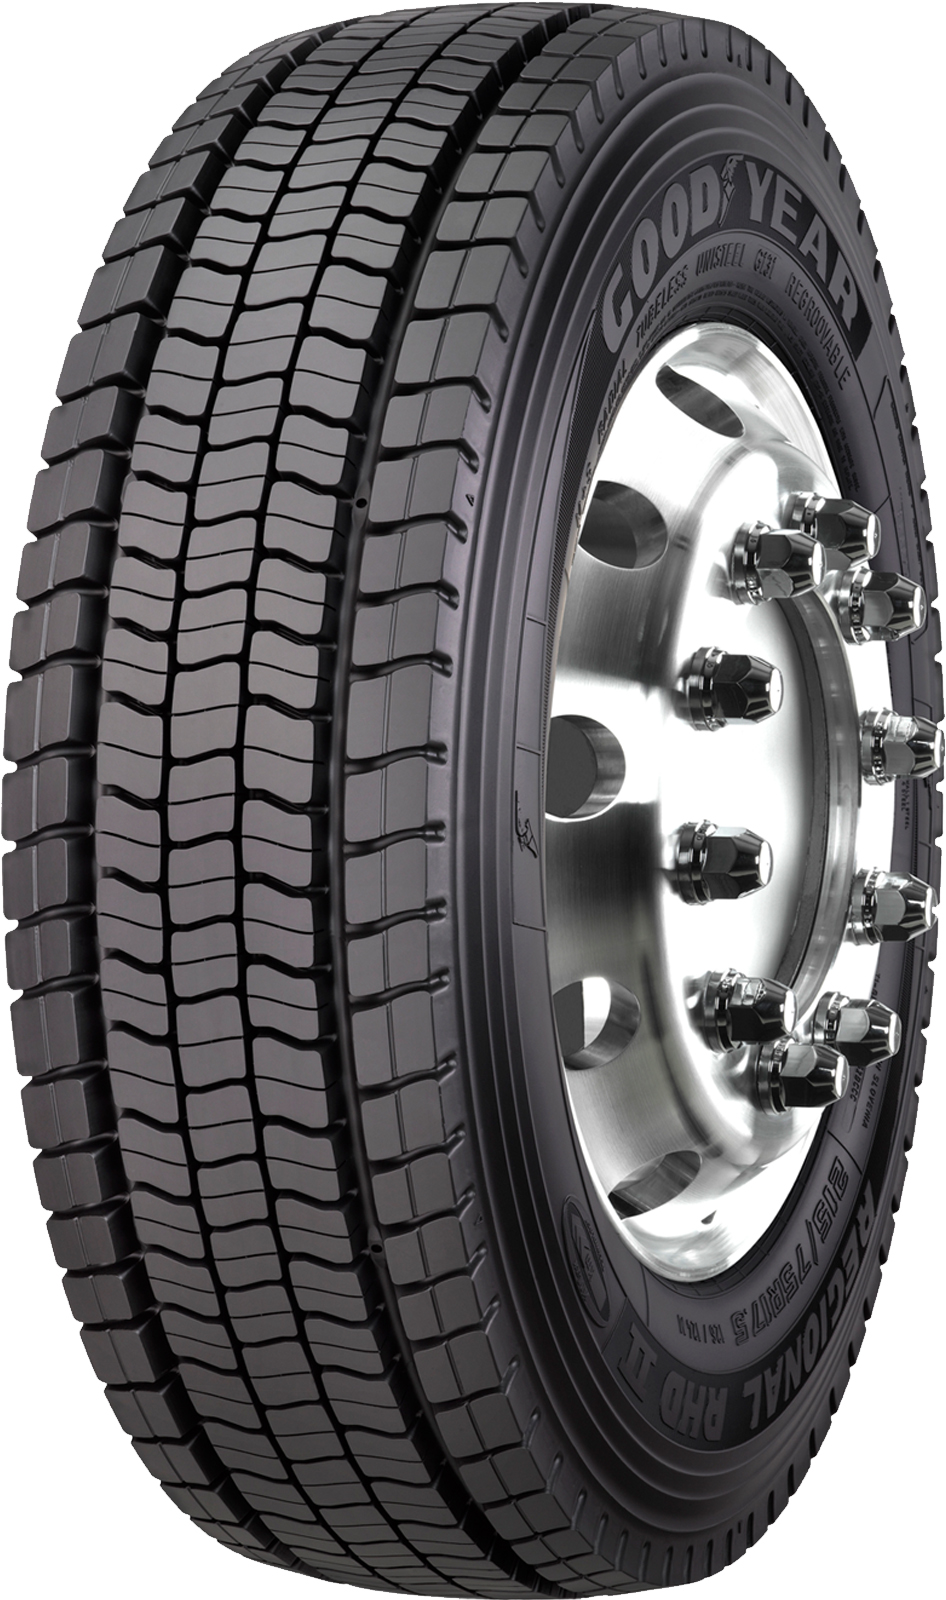 product_type-heavy_tires GOODYEAR REG. RHD II 225/75 R17.5 129M